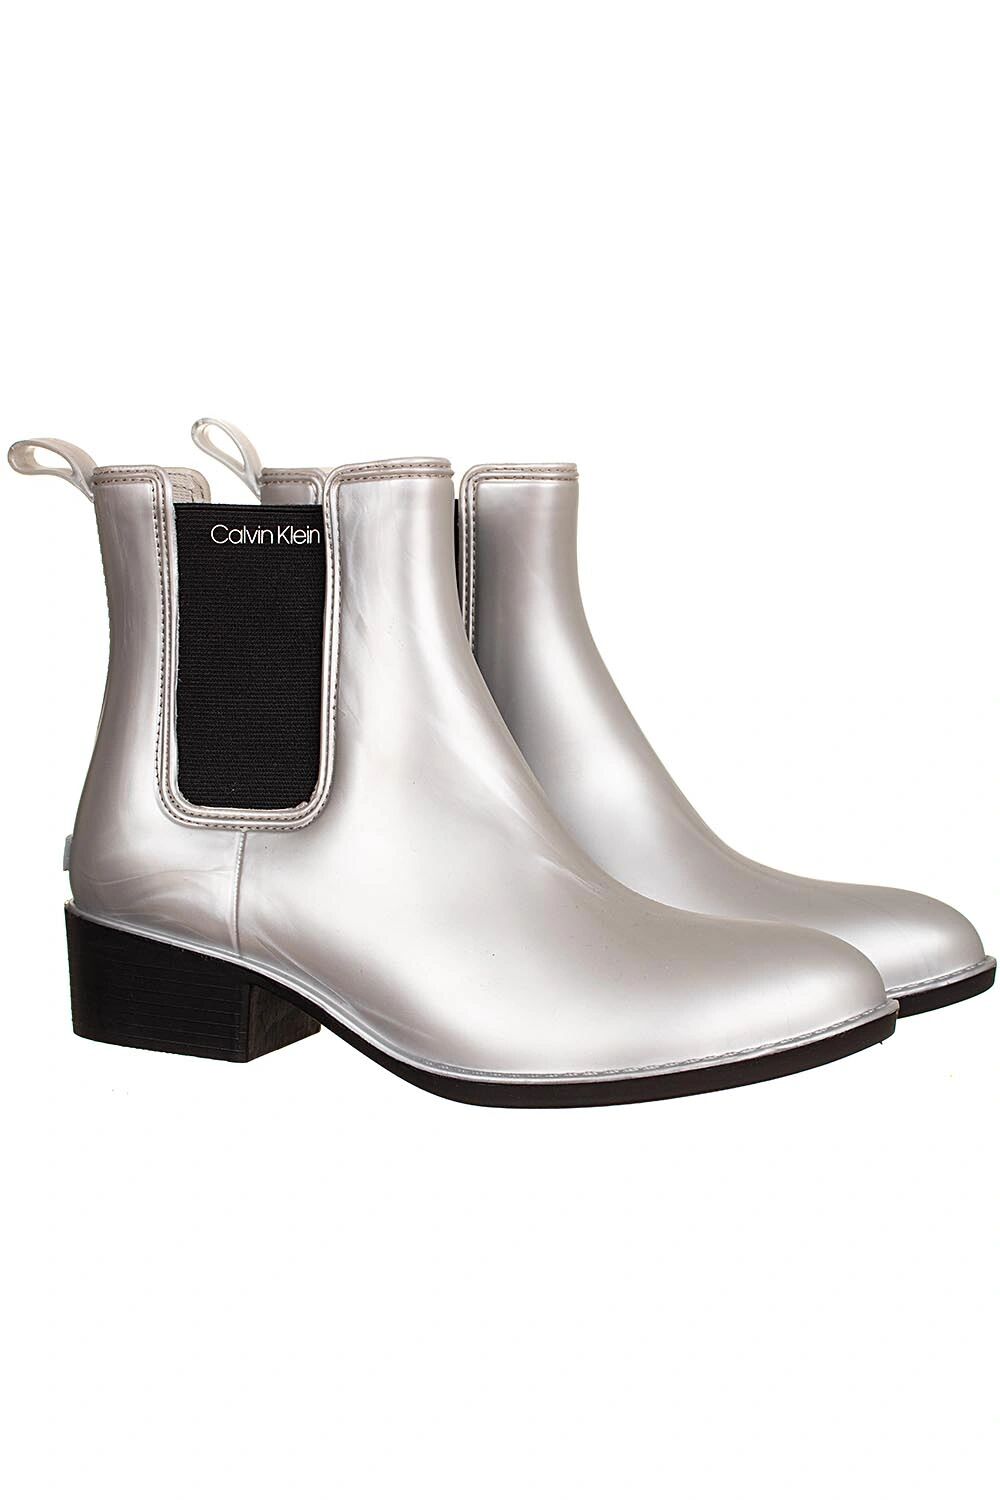 Calvin Klein dámské kotníkové boty stříbrné Velikost: EU 38